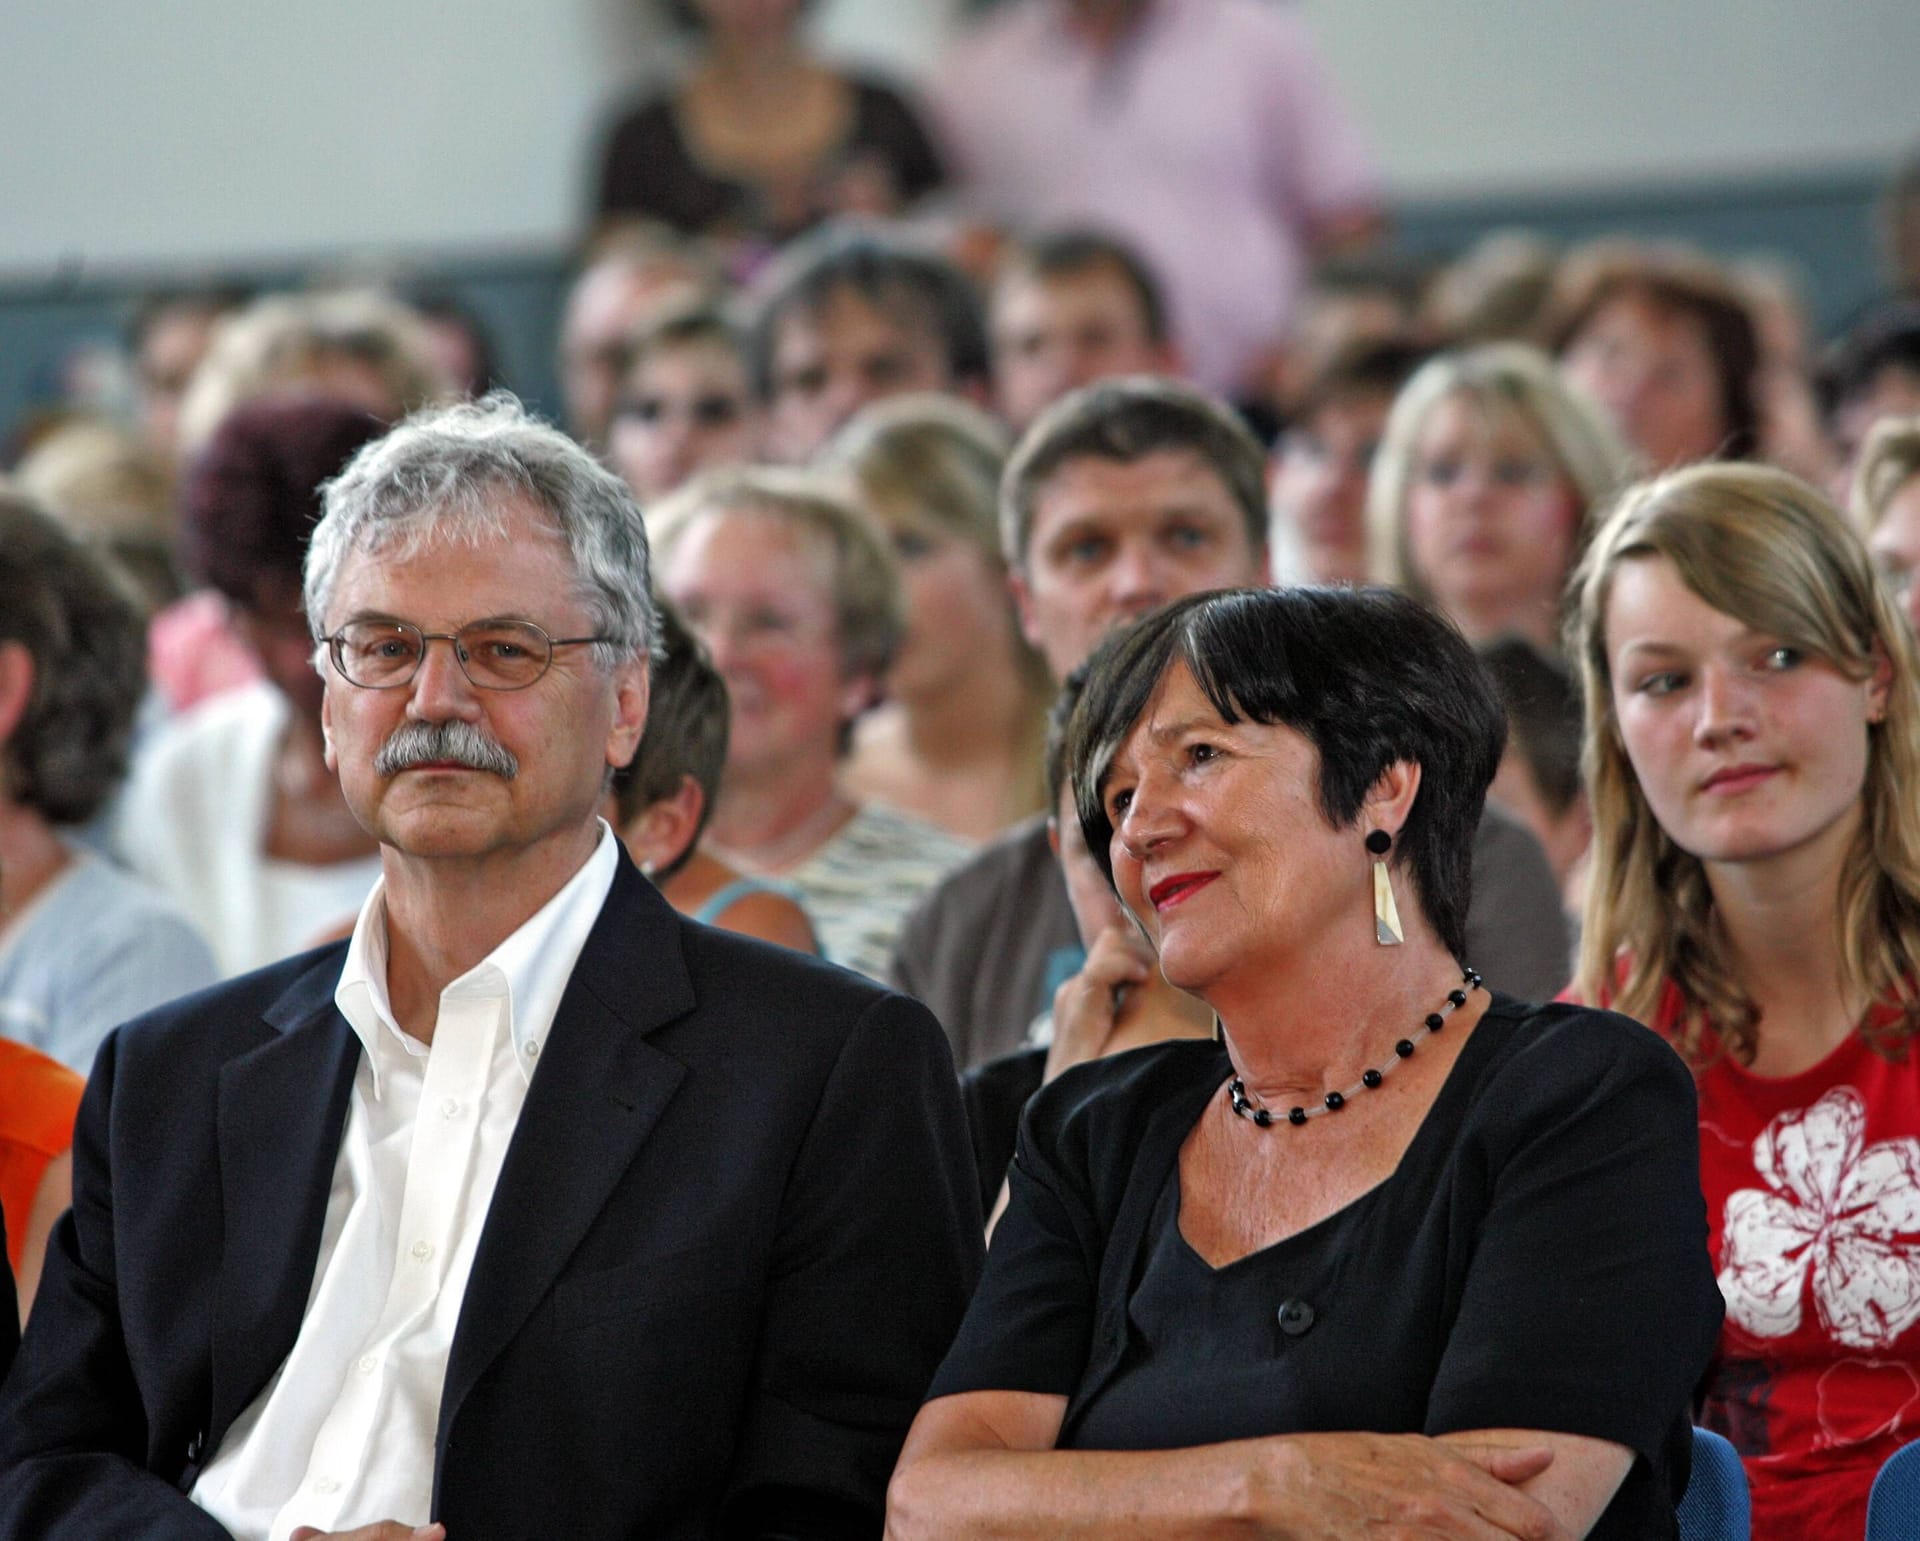 Bei einer Veranstaltung 2006: Paul Maar mit Ehefrau Nele.